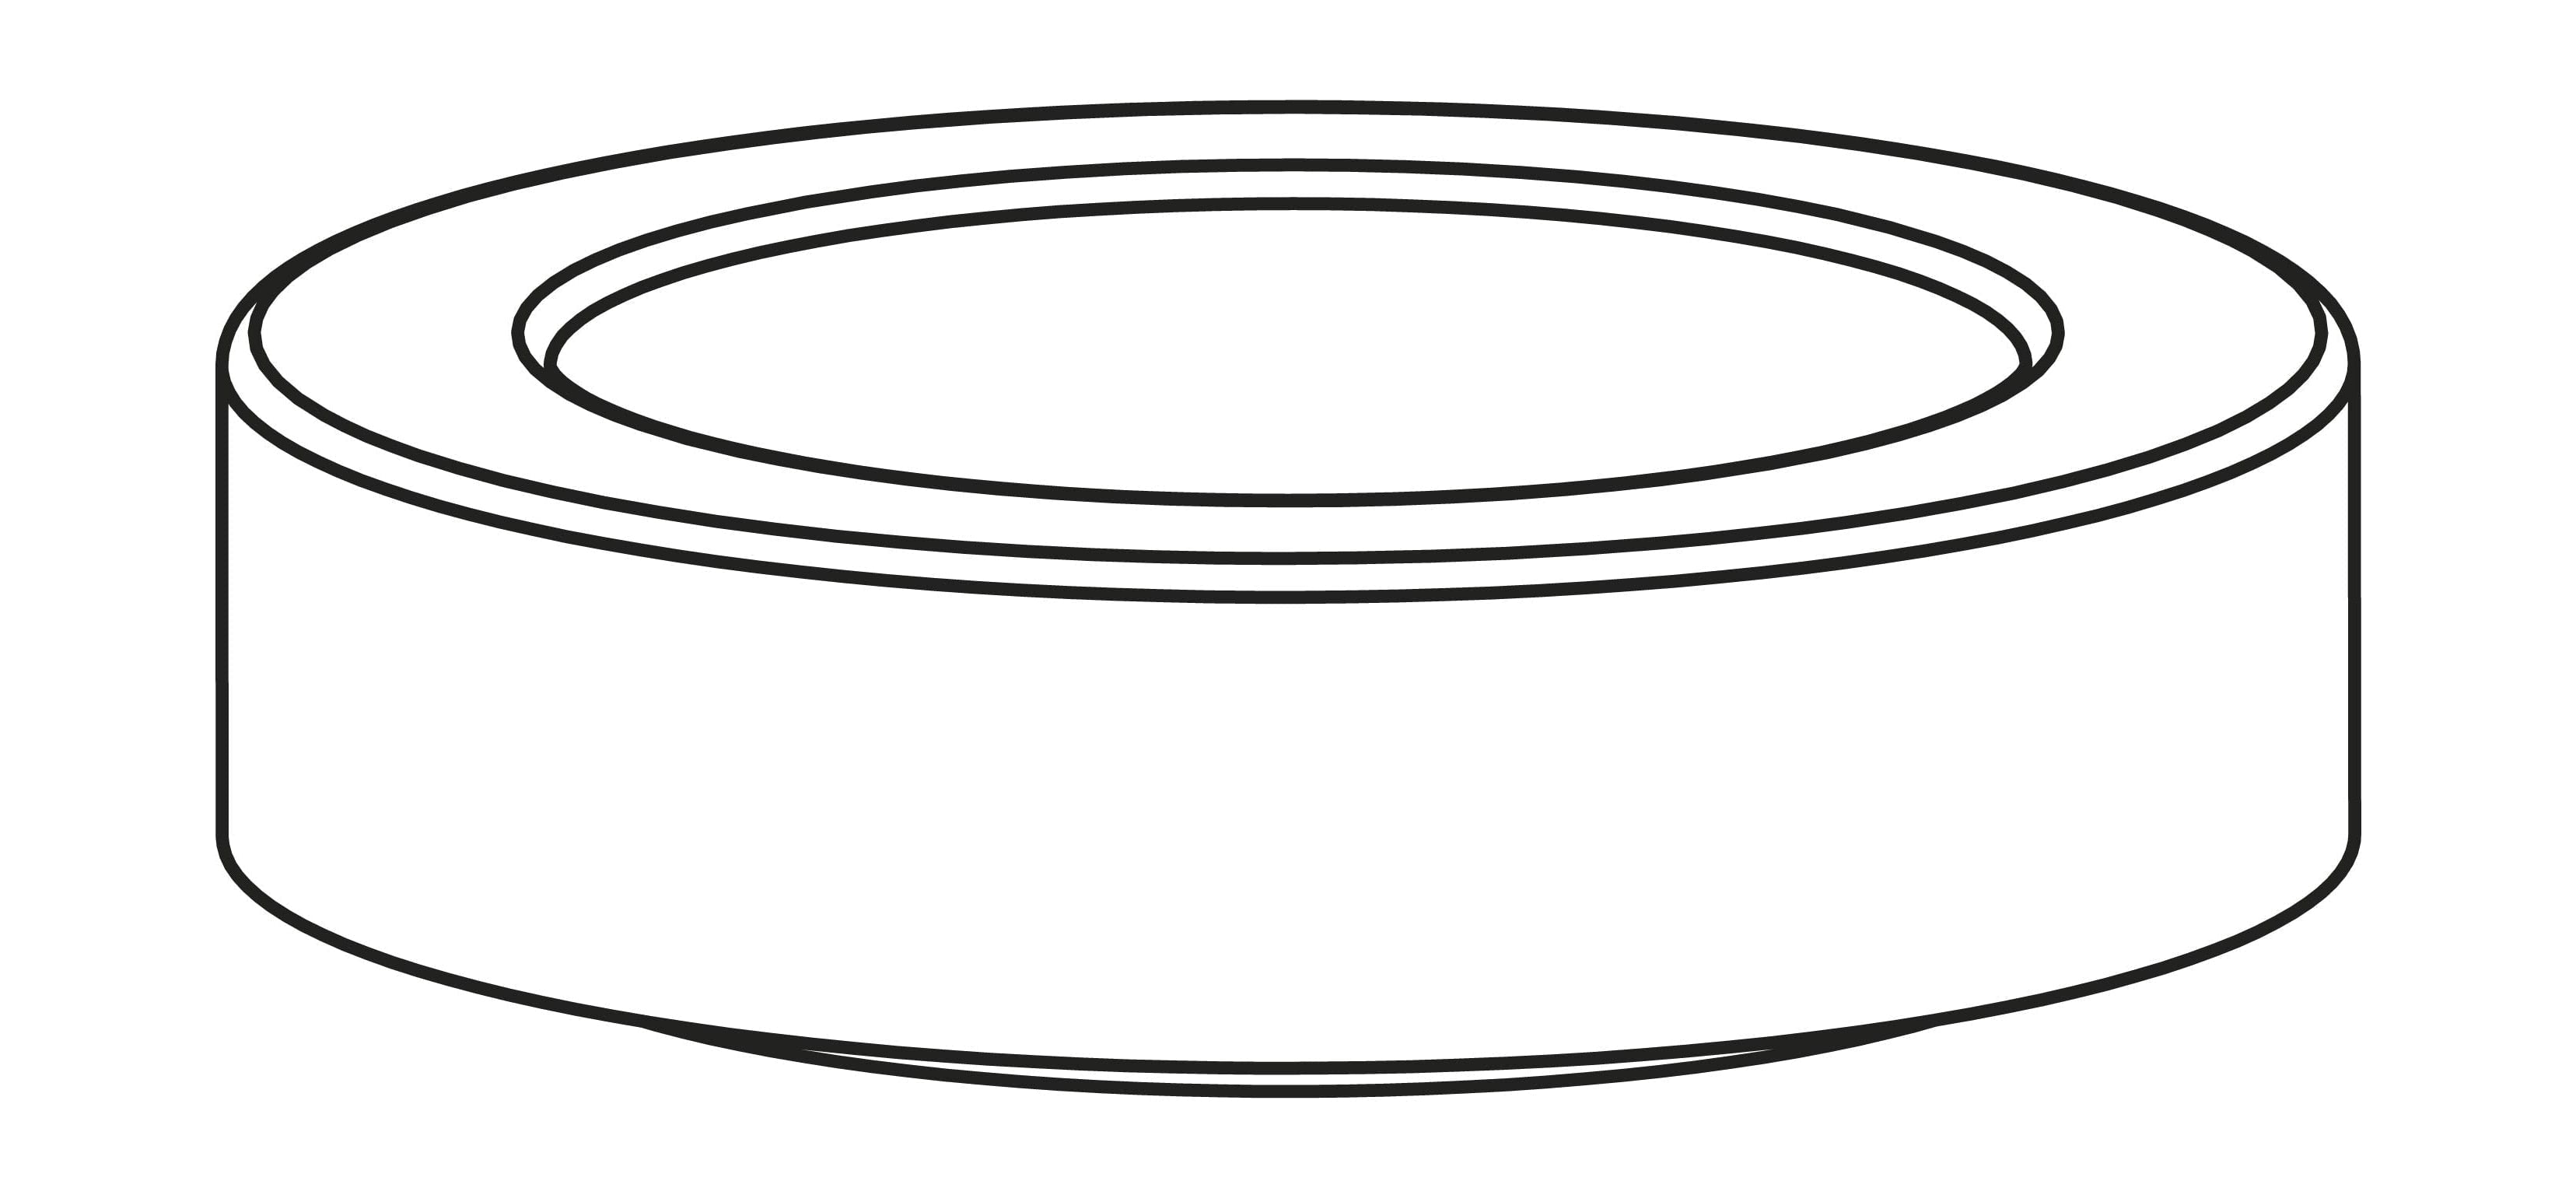 Pierścień uszczelniający Stelton Amphora do dzbanku próżniowego, 221, 222 czarny